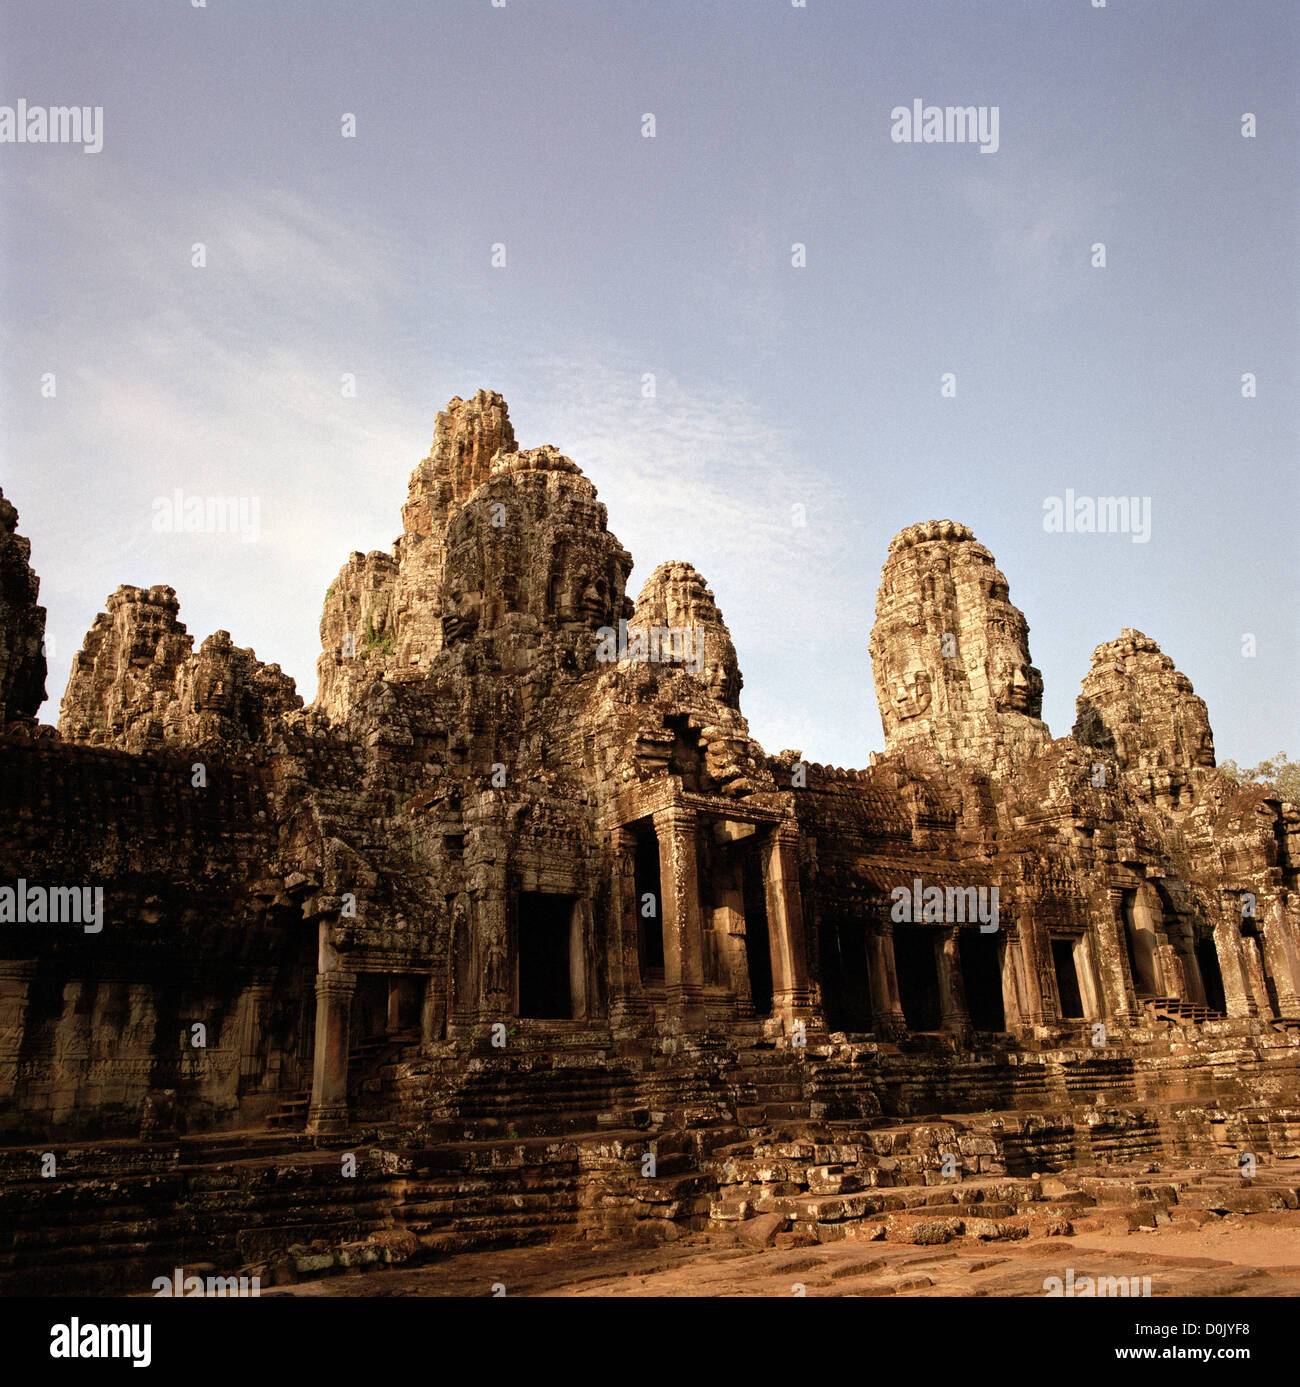 Im Dschungel ist der Khmer-Architektur von Bayon Angkor Thom an den Tempeln von Angkor in Kambodscha in Südostasien. Kambodschanische Geschichte reisen Stockfoto